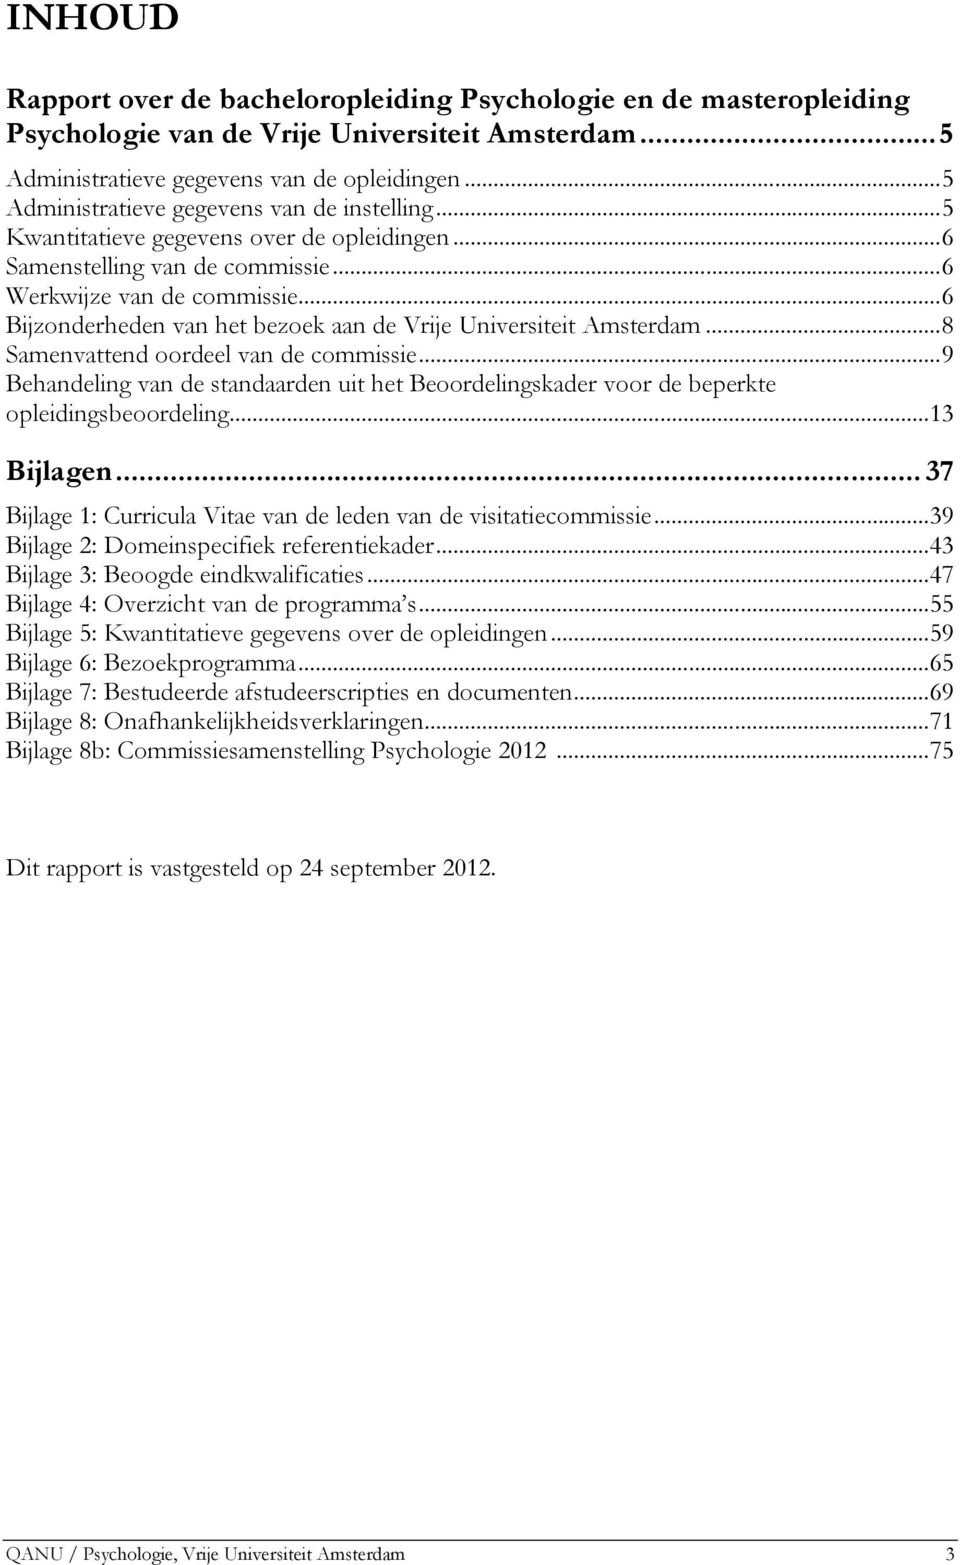 ..6 Bijzonderheden van het bezoek aan de Vrije Universiteit Amsterdam...8 Samenvattend oordeel van de commissie.